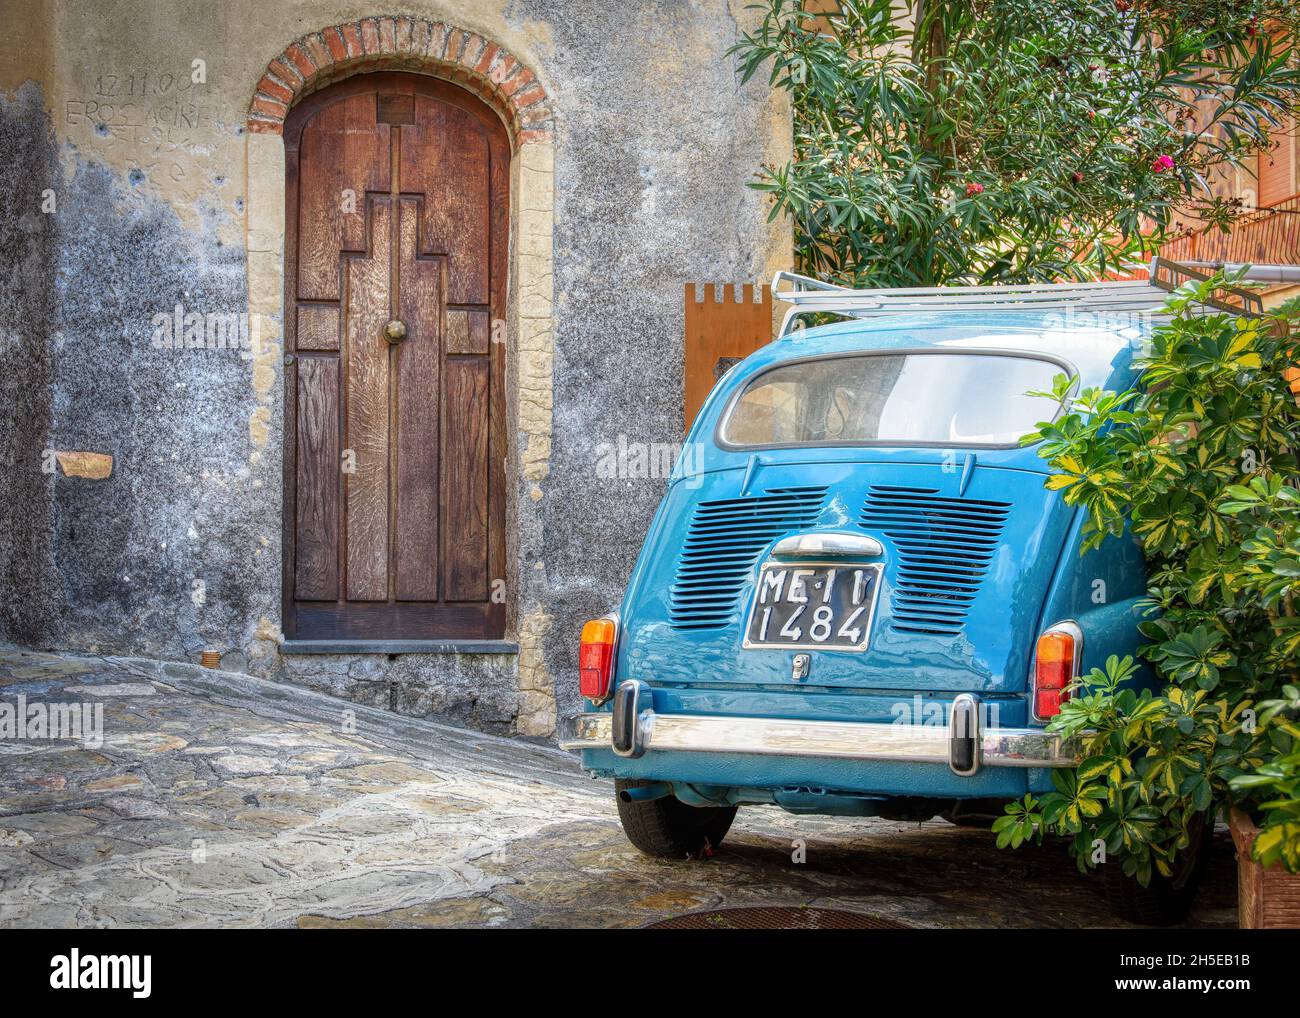 Sicilia, Italia - 14 ottobre 2015 : una Fiat 600 è parcheggiata accanto ad un vecchio edificio con una interessante porta in legno. Foto Stock